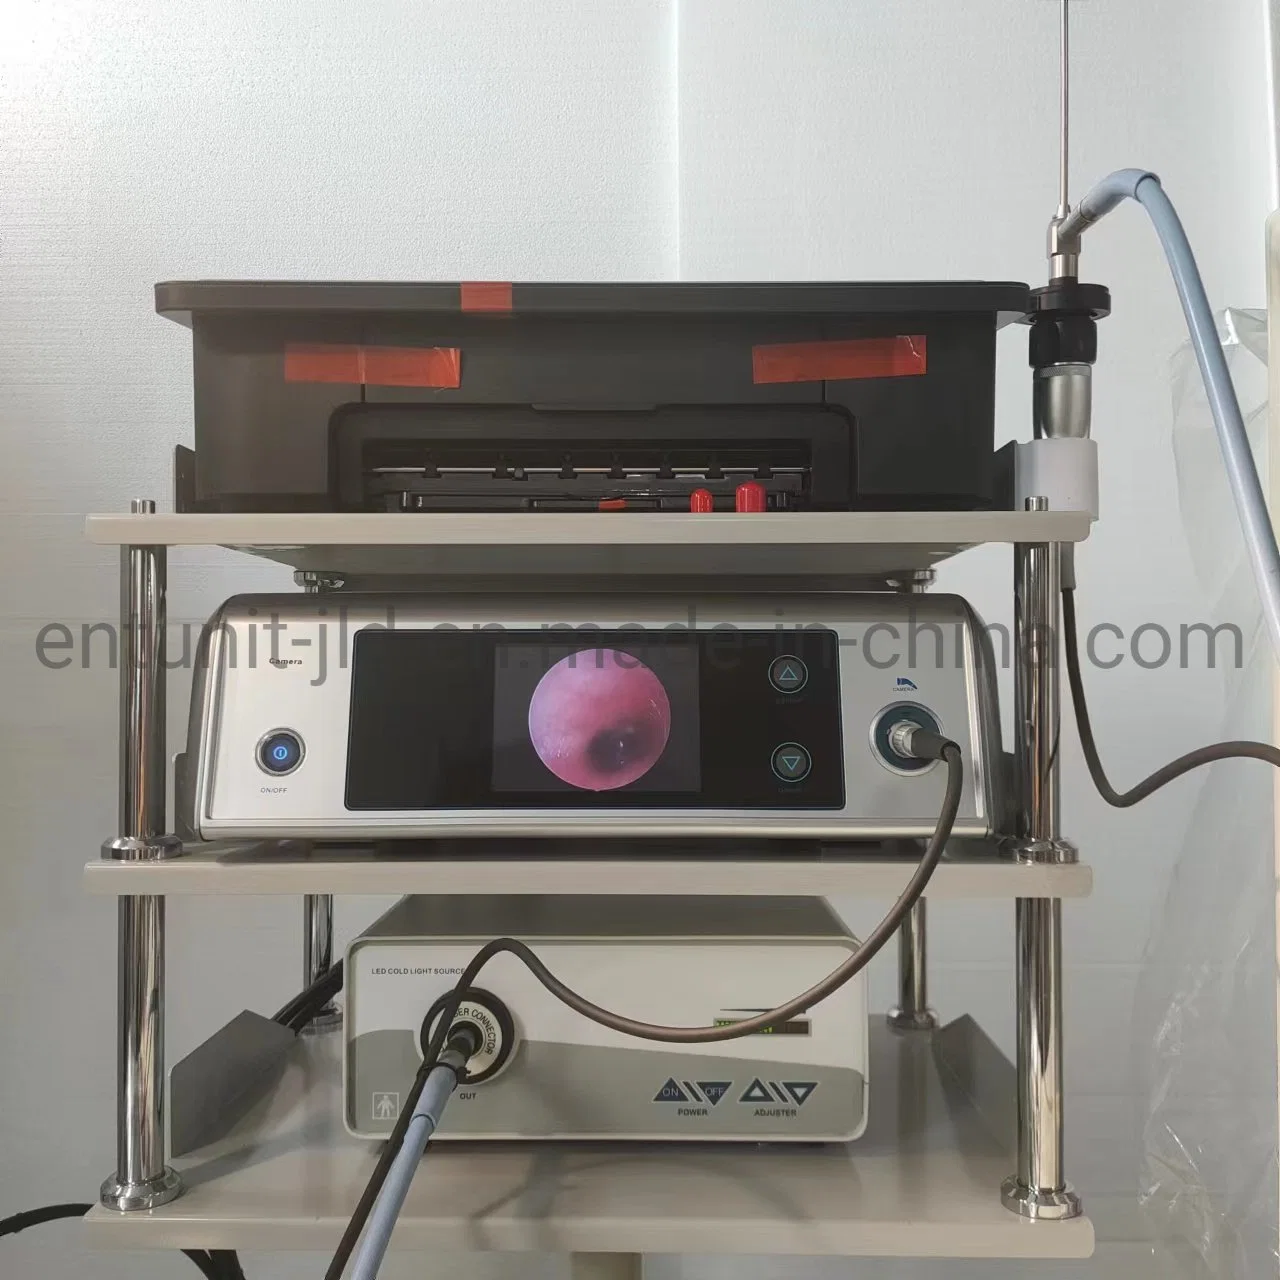 Los instrumentos quirúrgicos Ent cámara endoscópica laparoscopio Ent Medical Sistema procesador de vídeo cámara endoscópica de la cámara de la cirugía